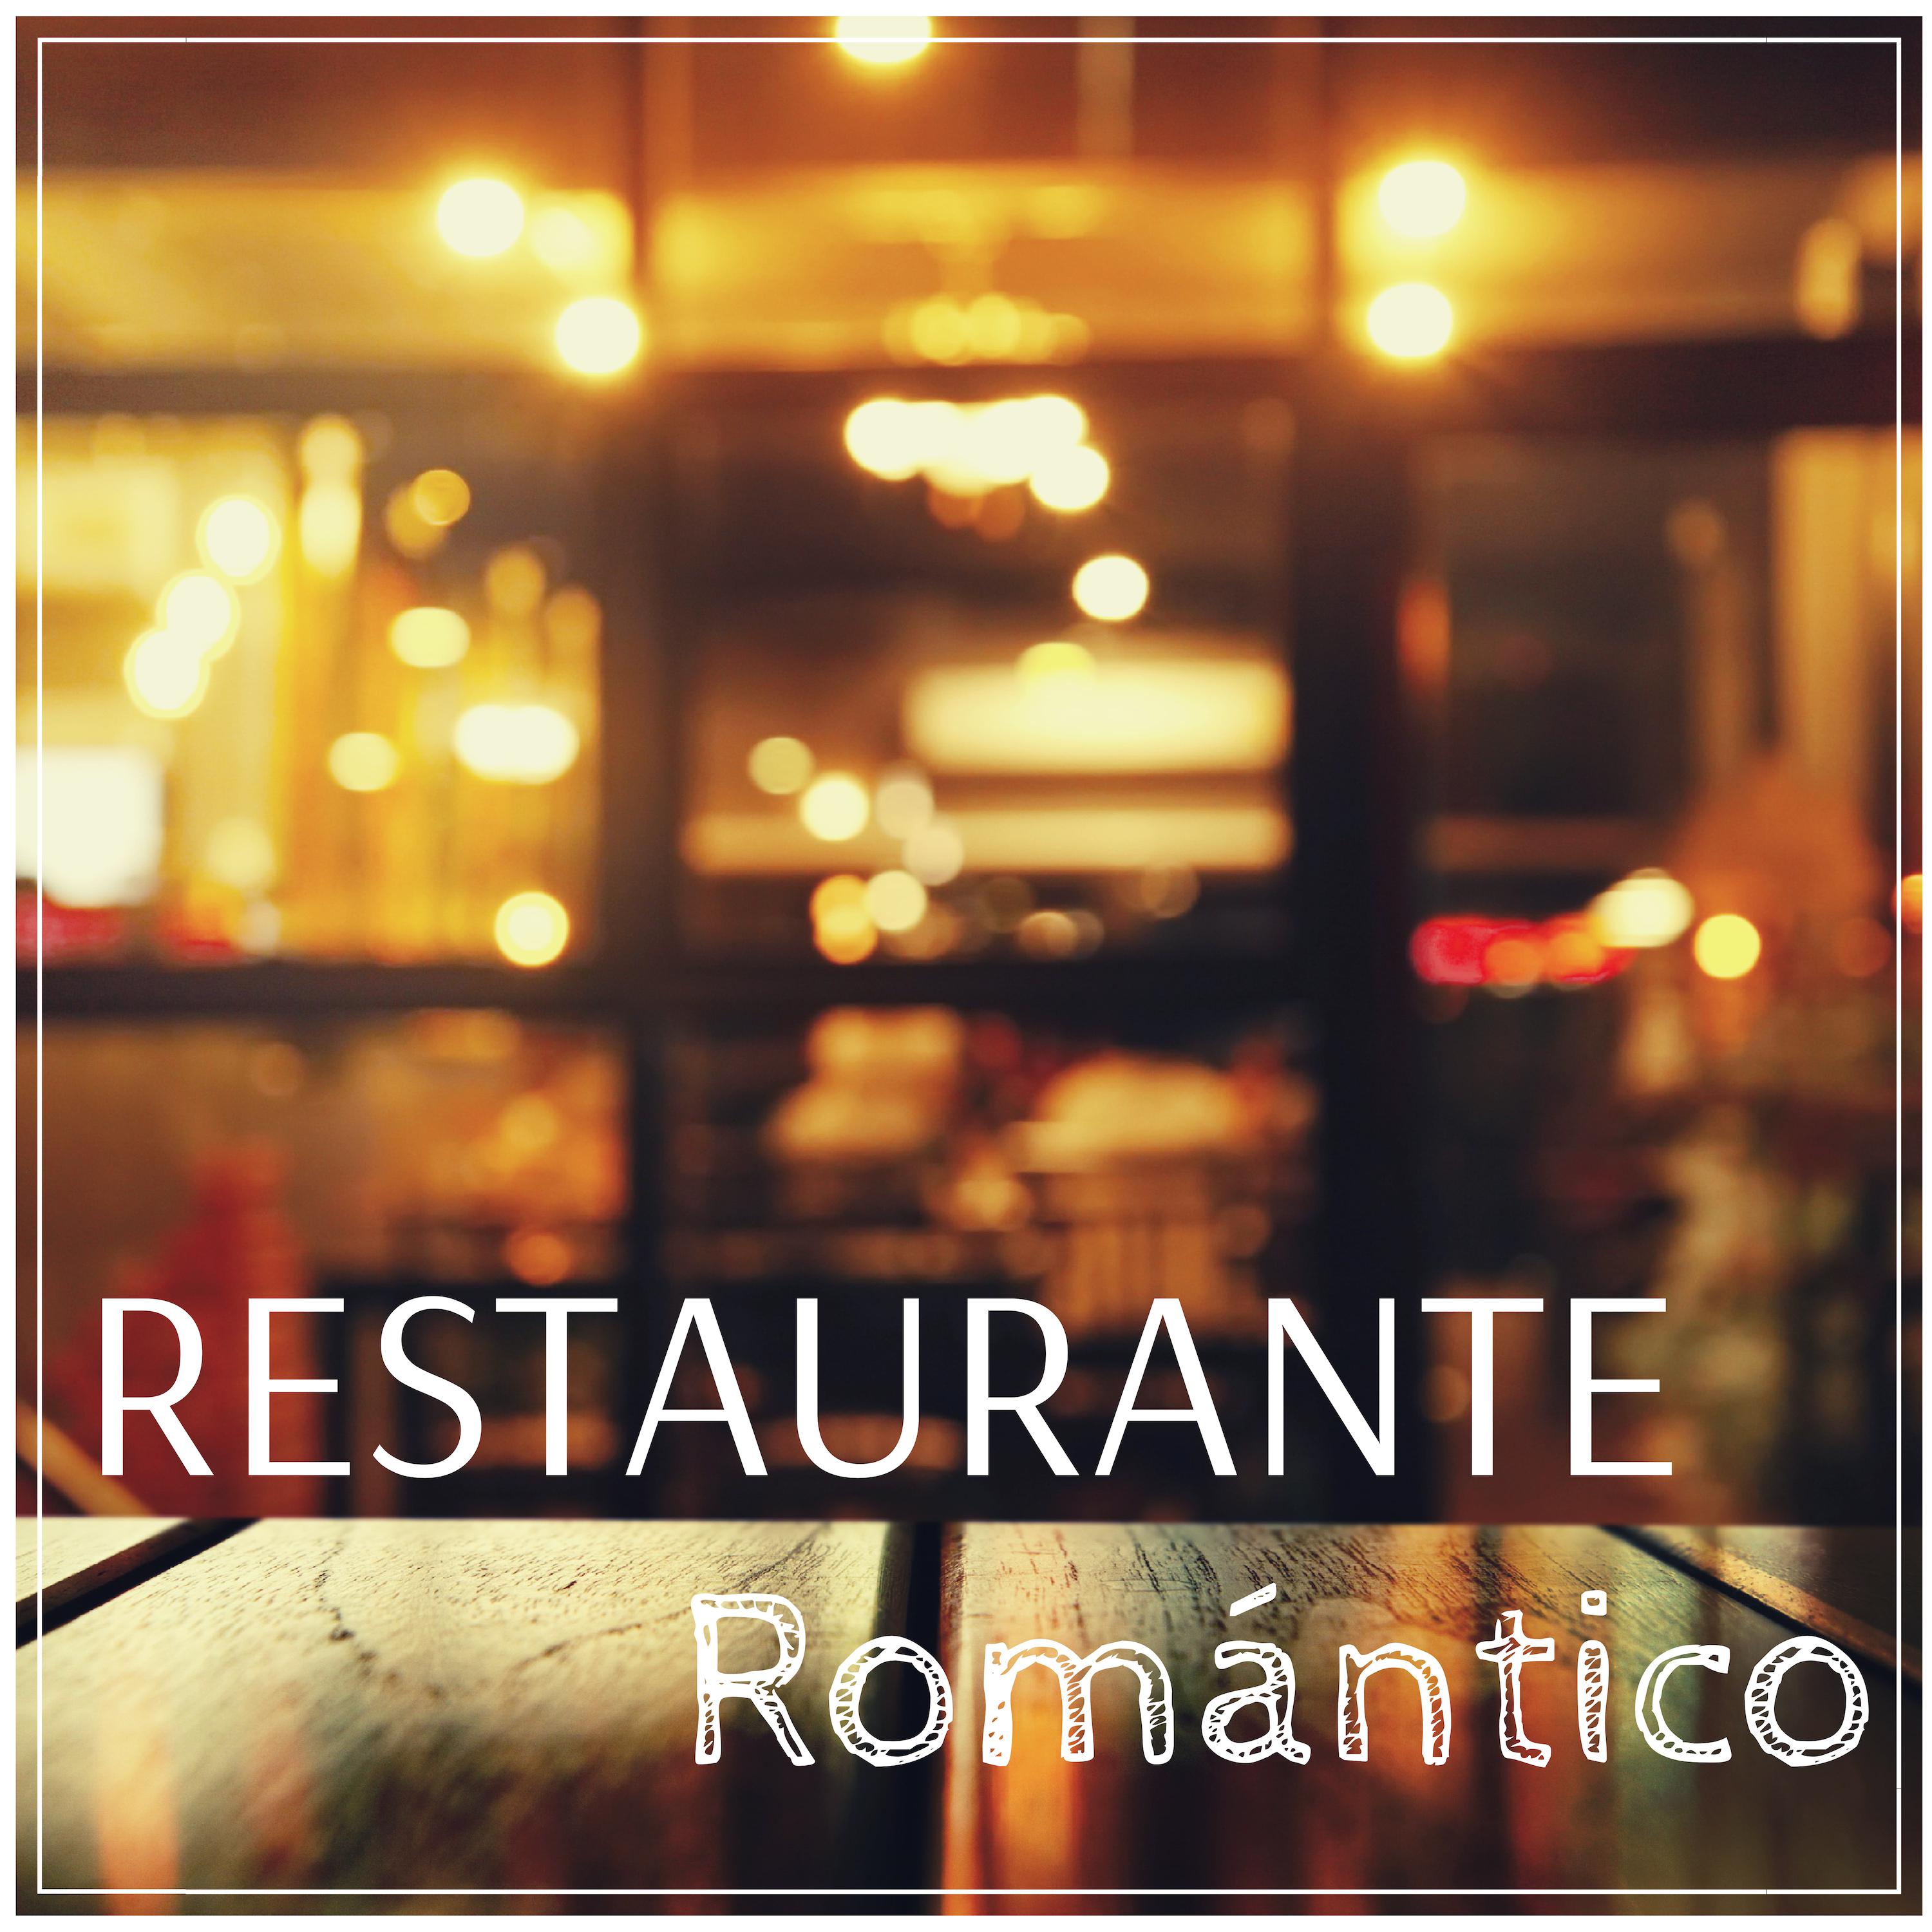 Restaurante Roma ntico  Canciones Instrumentales Cena Ambiente Elegante